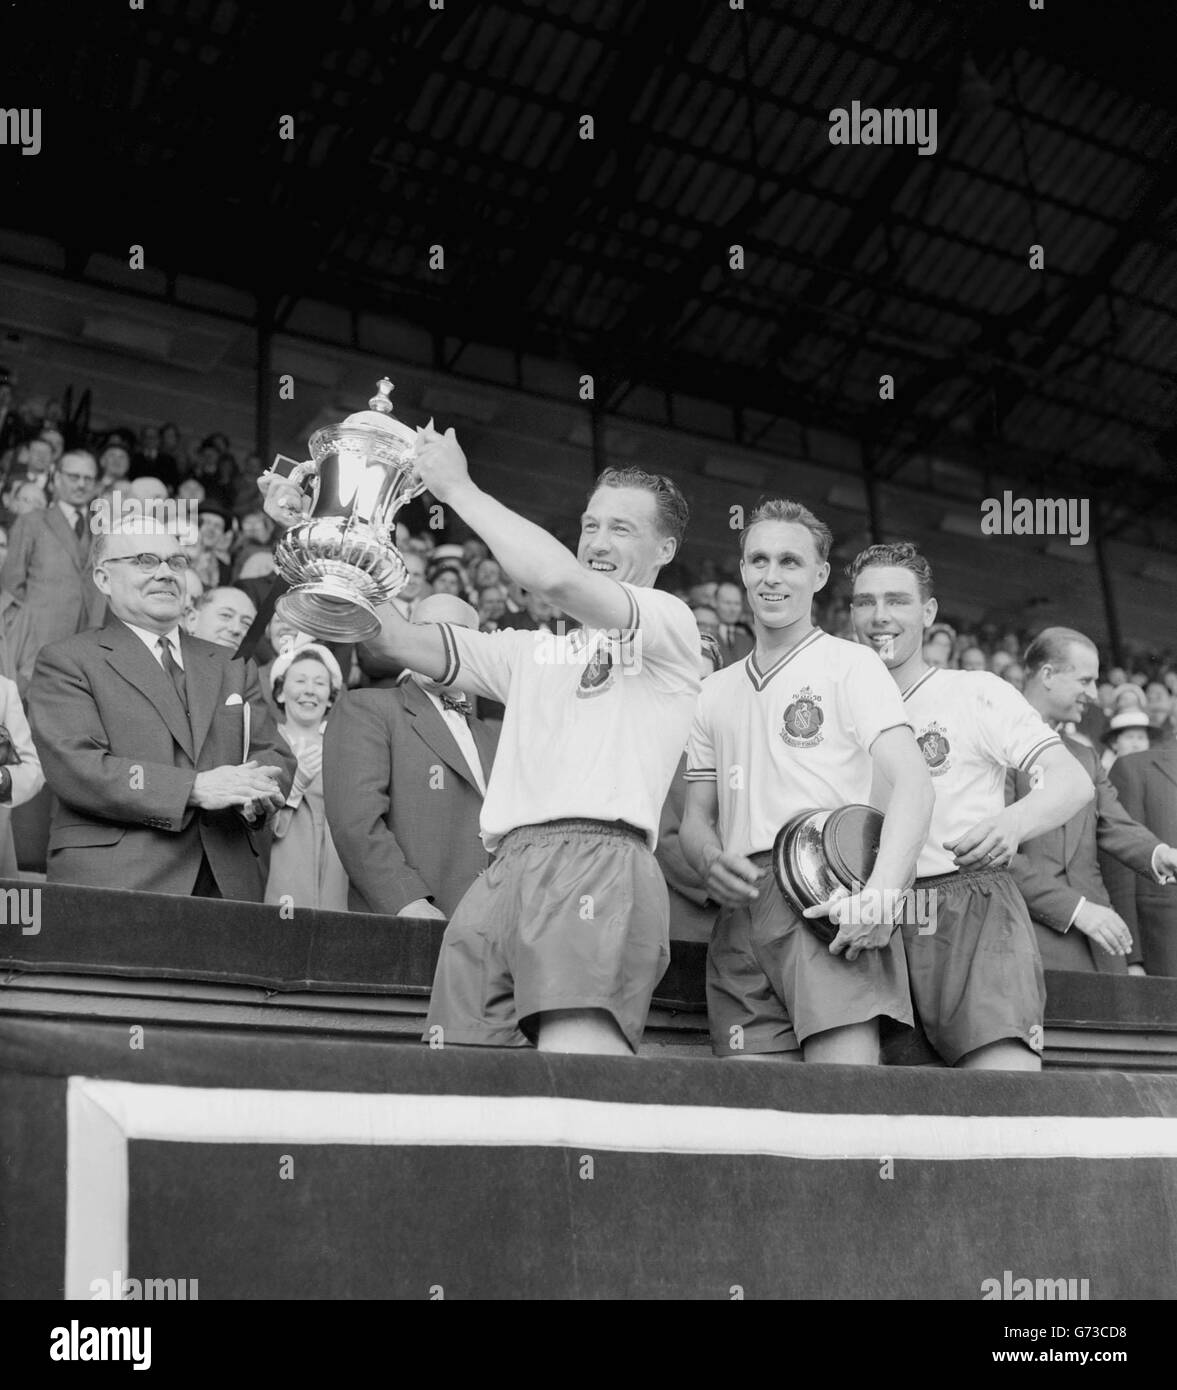 NAT Lofthouse, Mitte-vorne und Kapitän von Bolton Wanderers, hält den FA Cup triumphierend hoch, nachdem er ihn vom Duke of Edinburgh in Wembley erhalten hat. Bolton besiegte Manchester United mit 2:0. Stockfoto